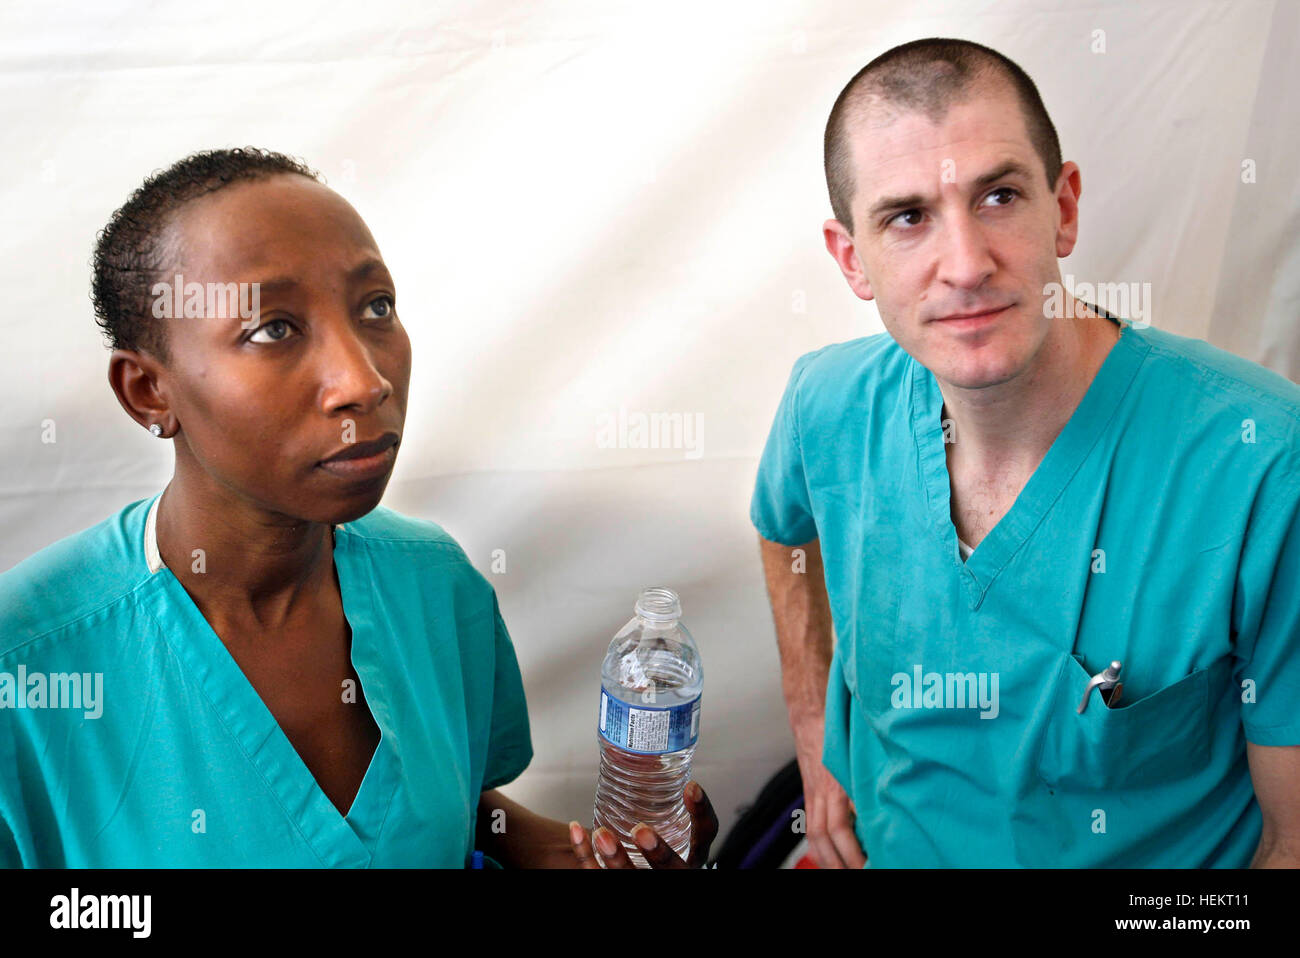 23 décembre 2016 - Port-au-Prince, en Floride, États-Unis - 011710 (eaux Lannis représente le Palm Beach/Post) PORT-AU-PRINCE, HAÏTI - Le Dr Dan Kairys (CQ), à droite, un chirurgien à Lakeside Medical Center à Belle Glade, et son épouse Junia Kairys (CQ), un assistant du médecin, qui travaille au projet Medishare centre de triage dans le complexe des Nations Unies à l'aéroport. (Crédit Image : ©/Eaux Lannis représente le Palm Beach Post via Zuma sur le fil) Banque D'Images